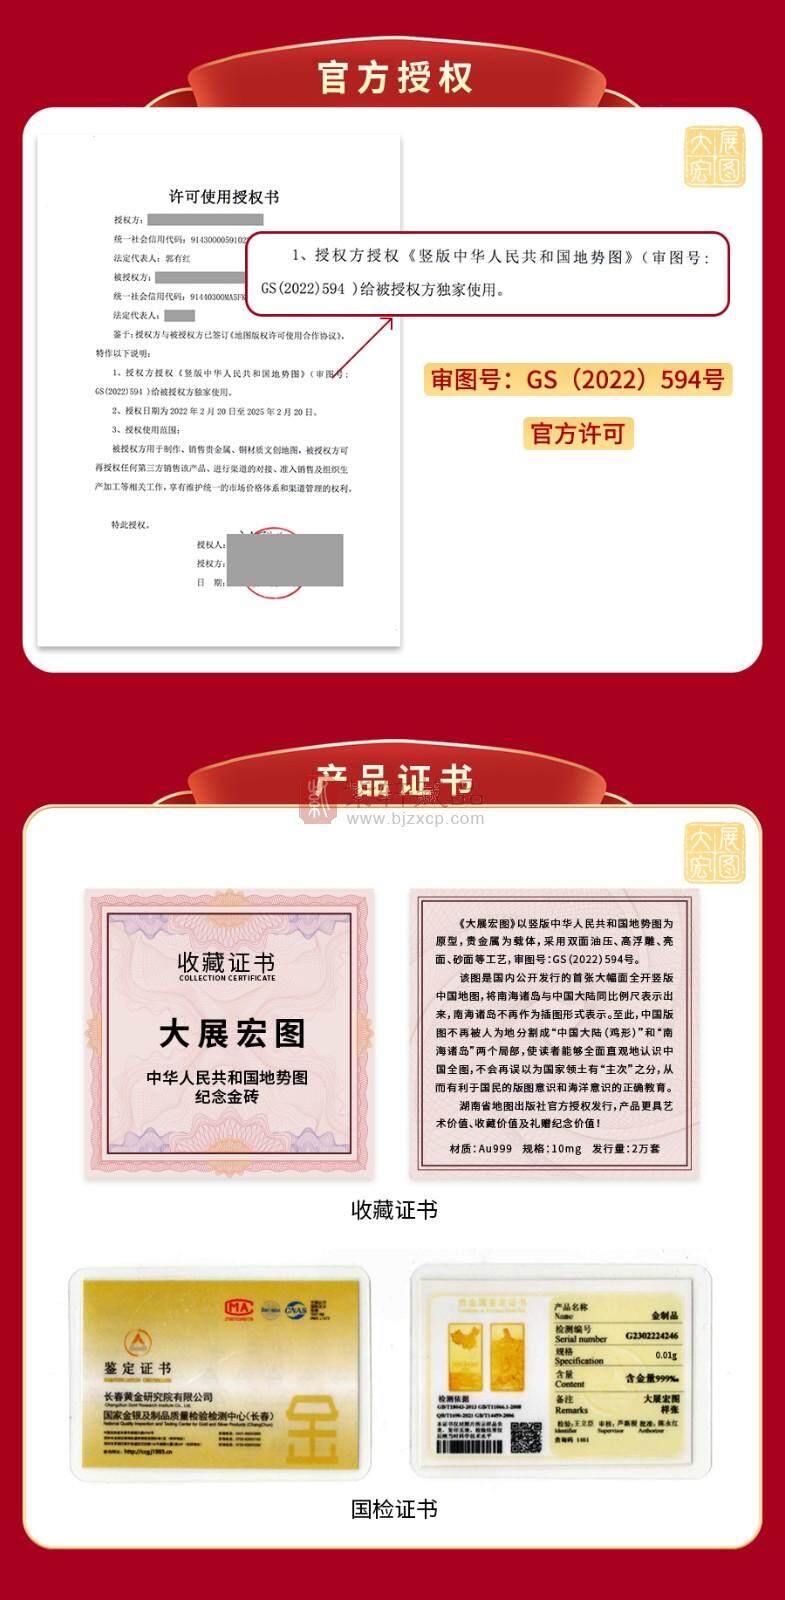 【大展宏图】中华人民共和国地势图纪念金（Au999）